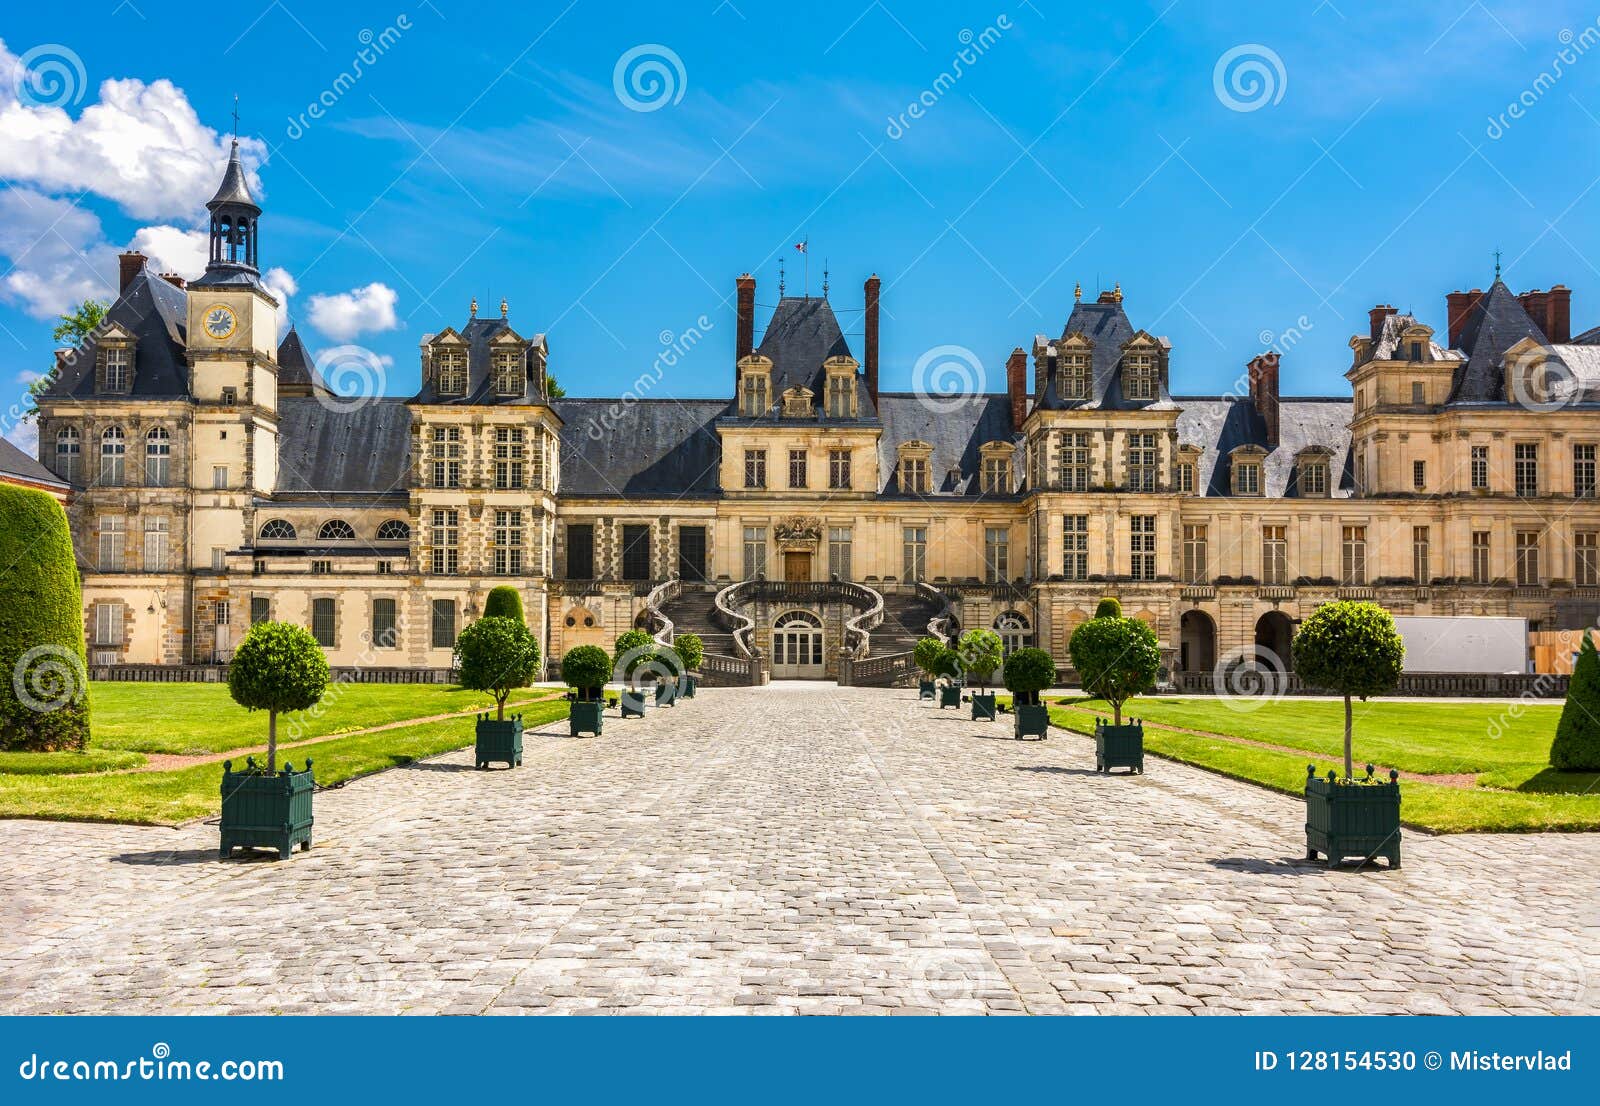 Fontainebleau Palace Chateau De Fontainebleau France Stock Photo Image Of Castle Plant